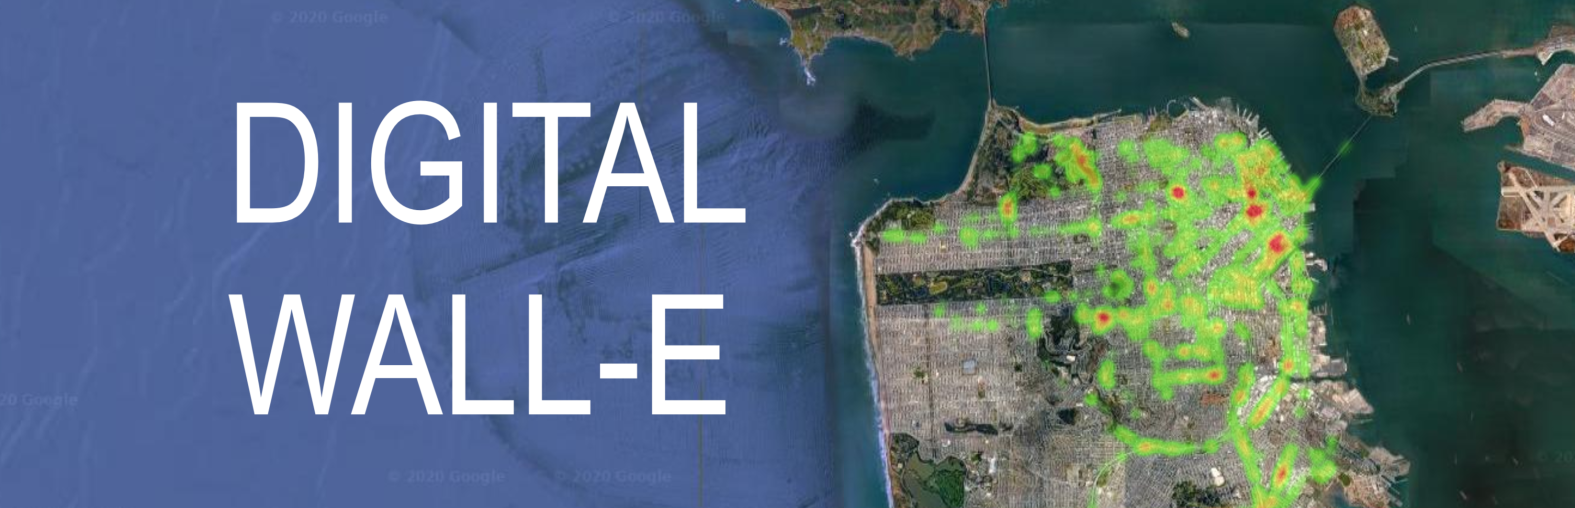 Digital Wall-E: Visualizing trash